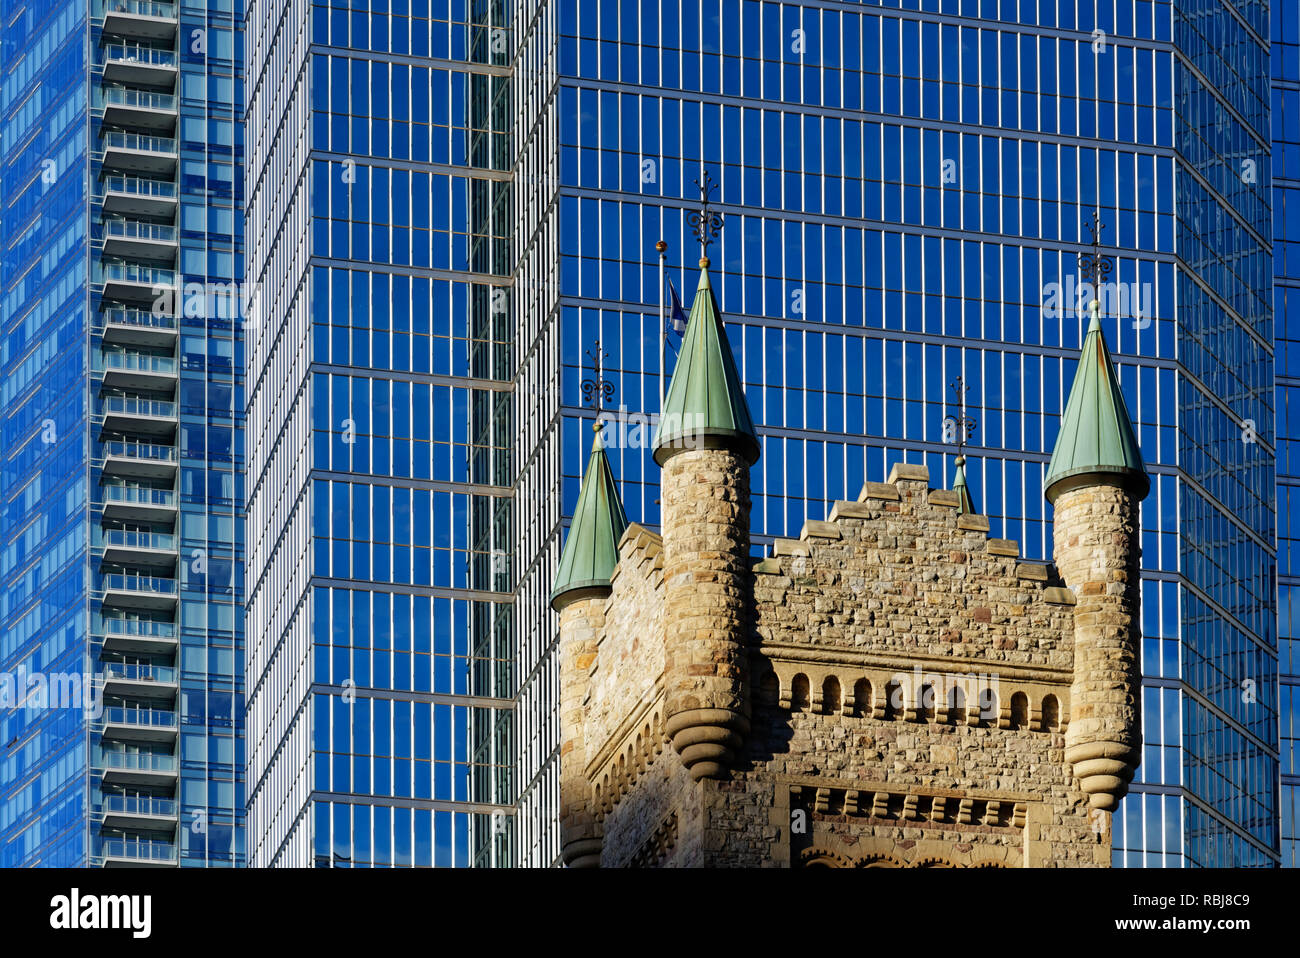 La torre de la Iglesia de San Andrés en Toronto con el Banco de Montreal (BMO) Edificio detrás Foto de stock